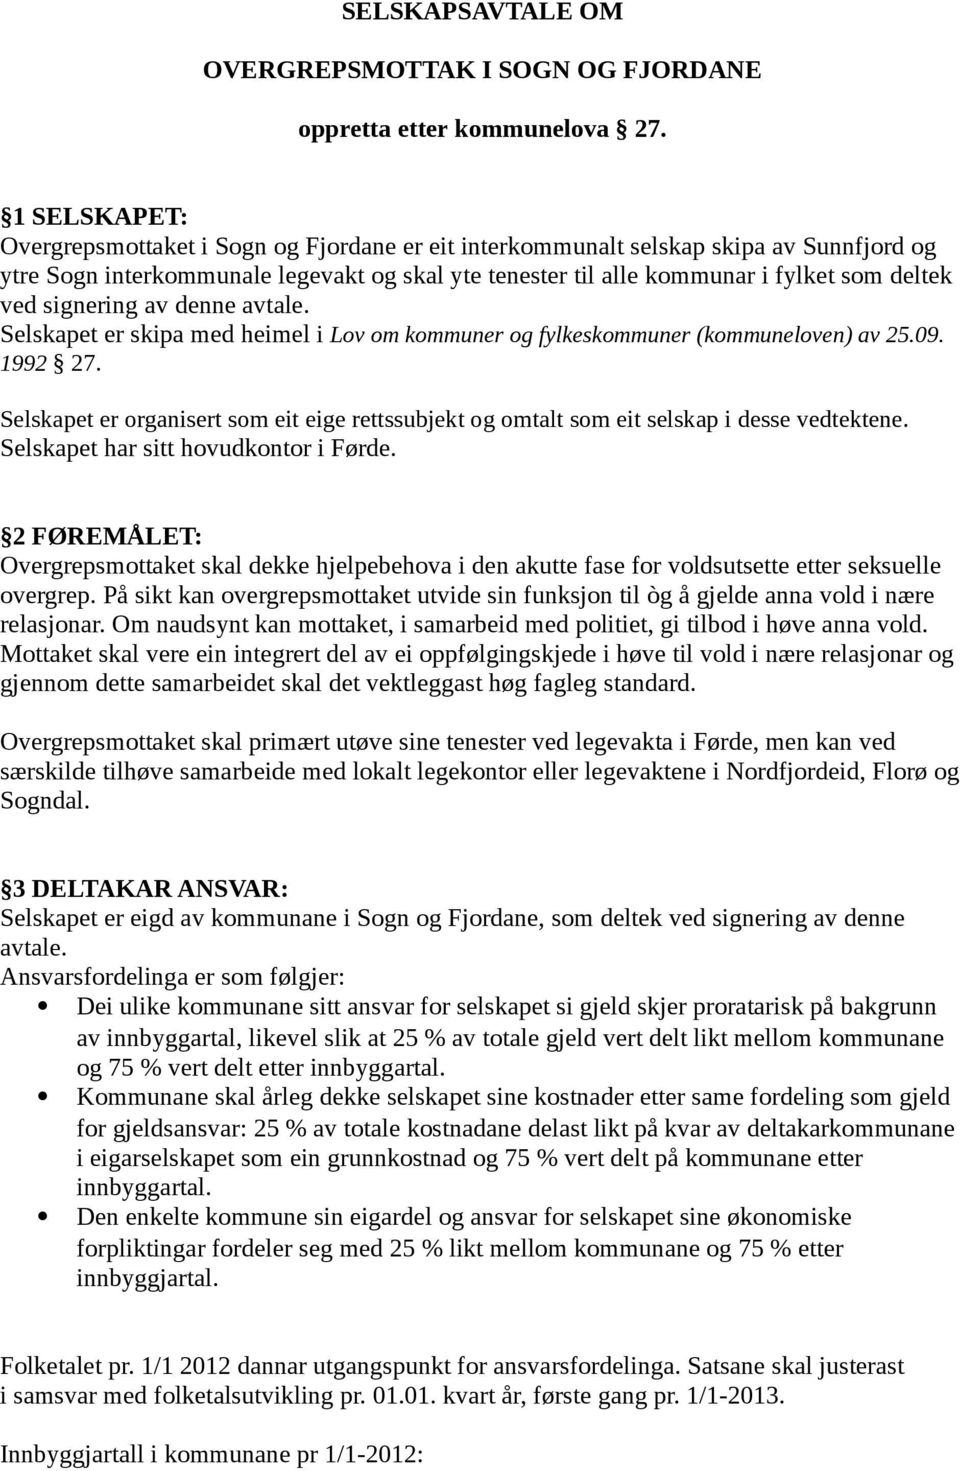 signering av denne avtale. Selskapet er skipa med heimel i Lov om kommuner og fylkeskommuner (kommuneloven) av 25.09. 1992 27.